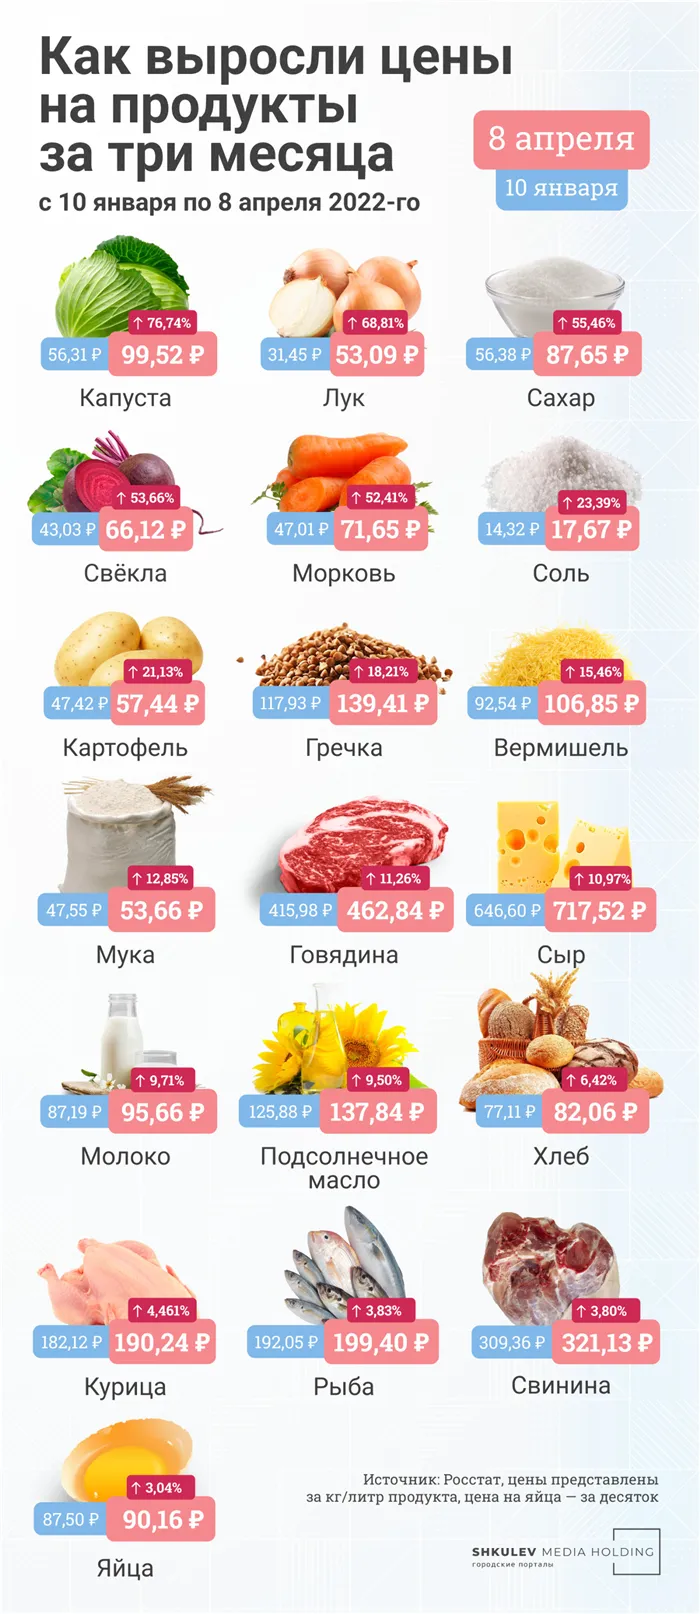 Цены на продукты питания на апрель 2022 года следующие.